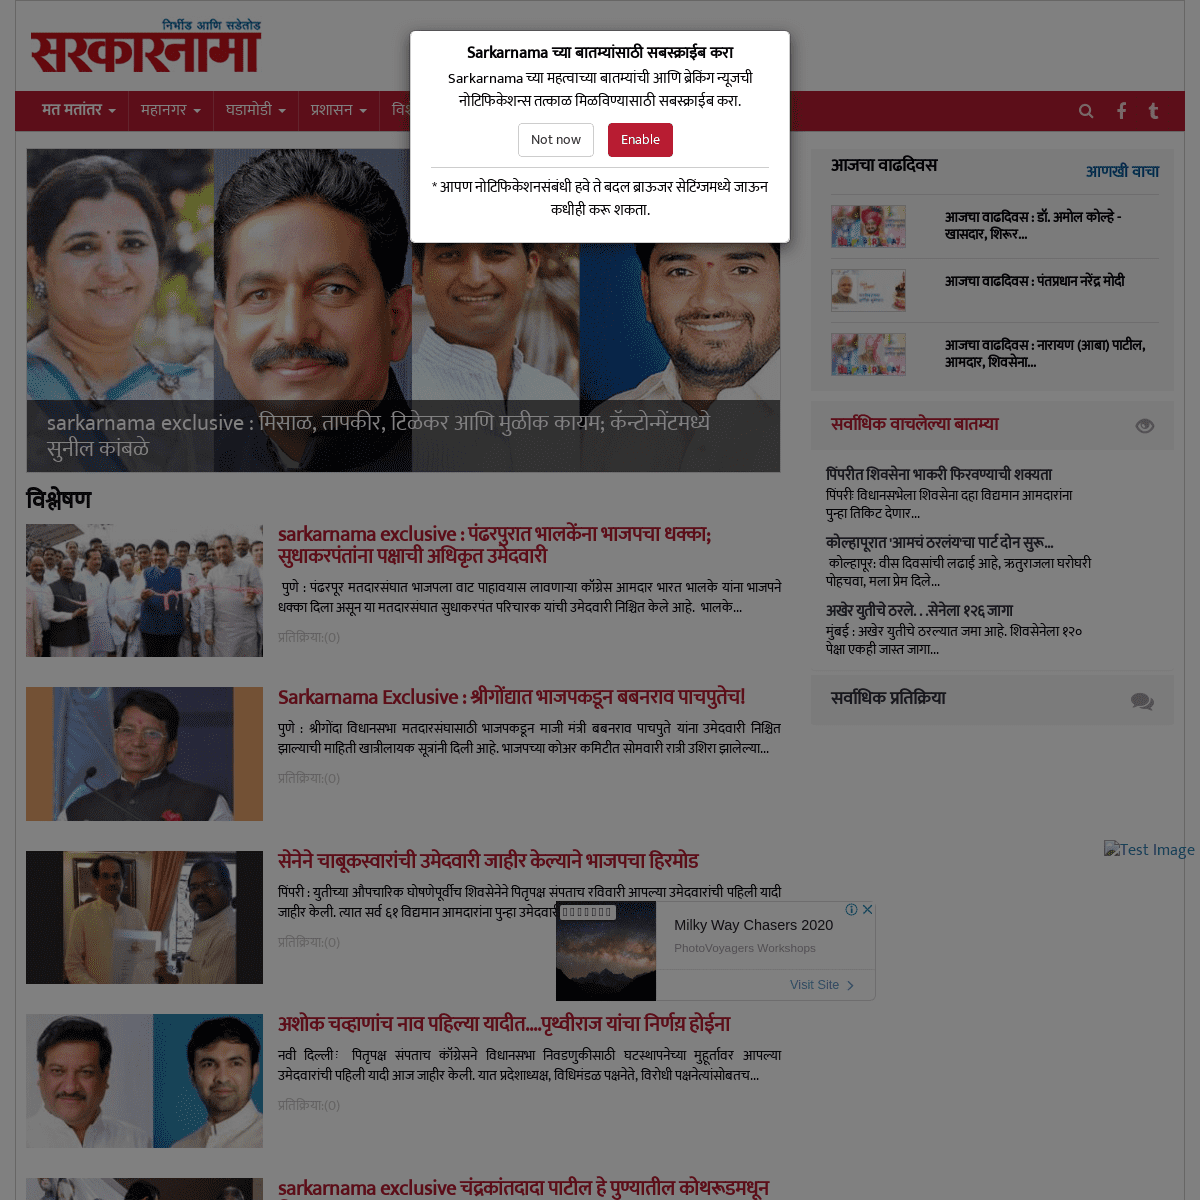 Sarkarnama | Maharashtra Politics News, Latest News in Maharashtra, Maharashtra Politics, Marathi News, Latest Marathi News